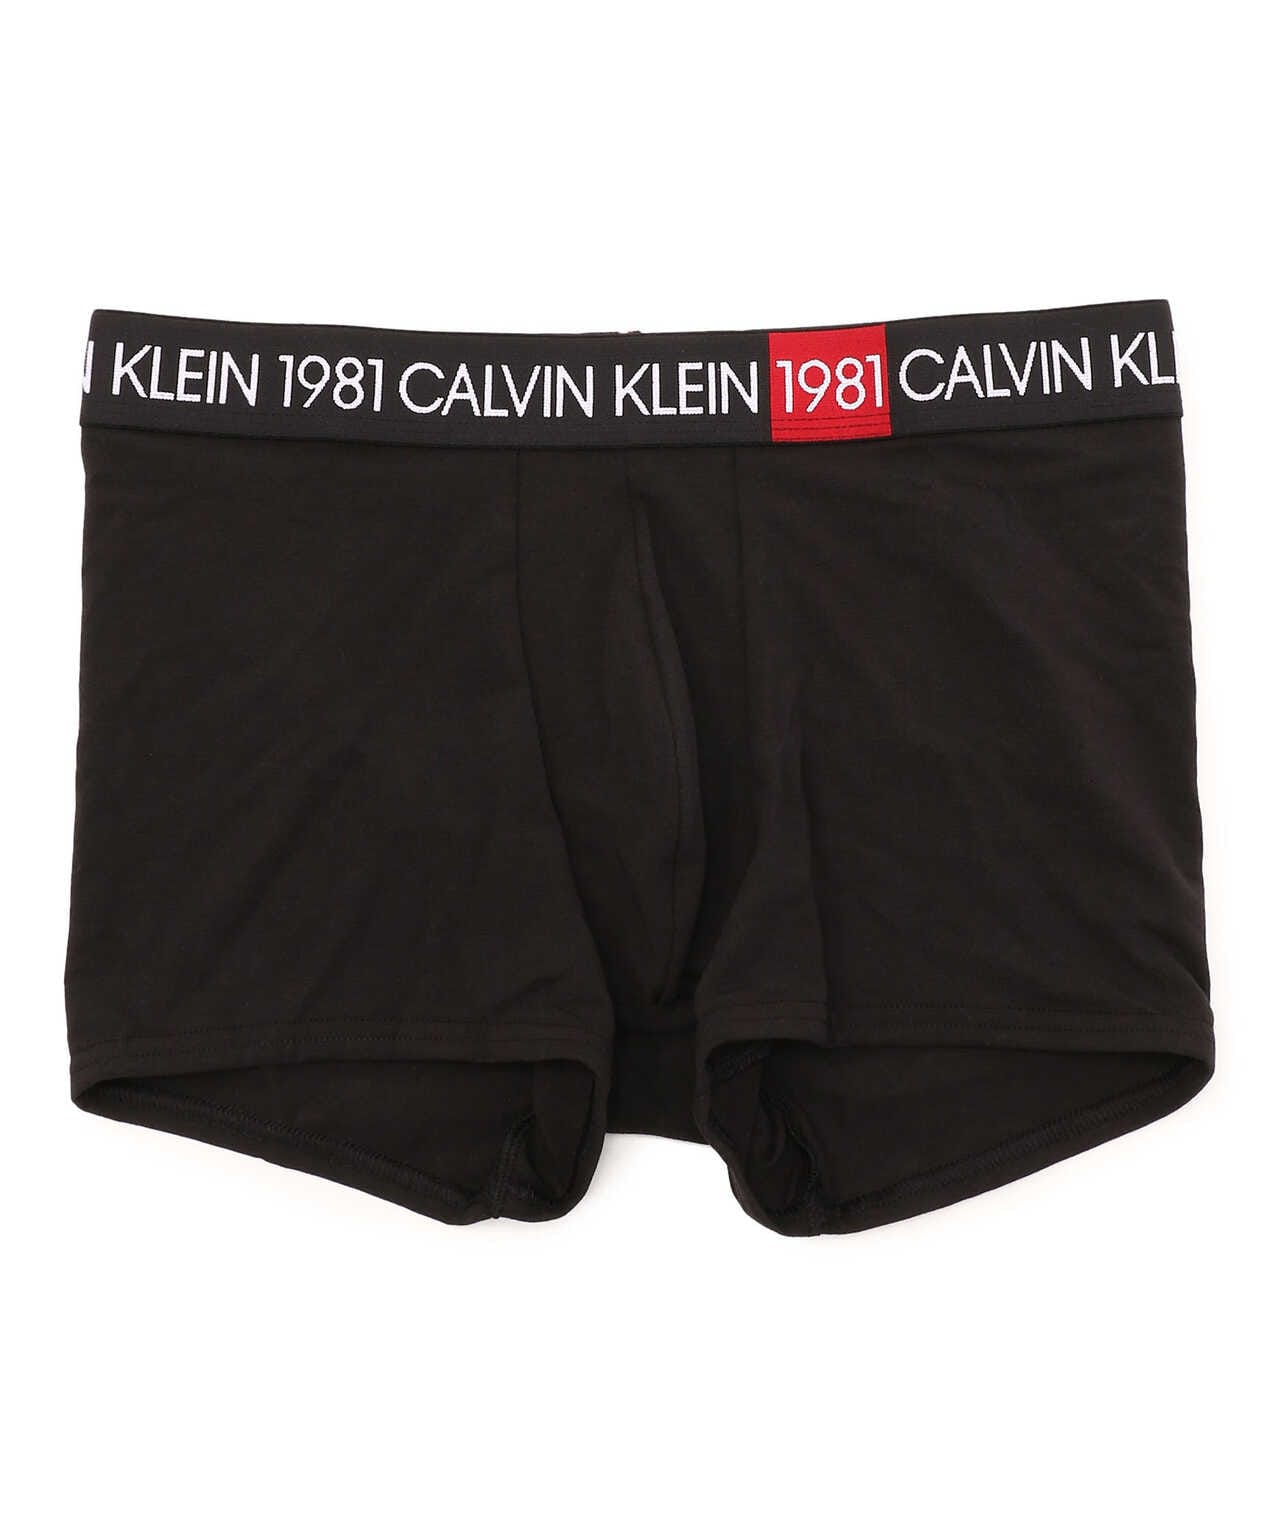  Calvin Klein UNDERWEAR メンズ US サイズ: X-Small